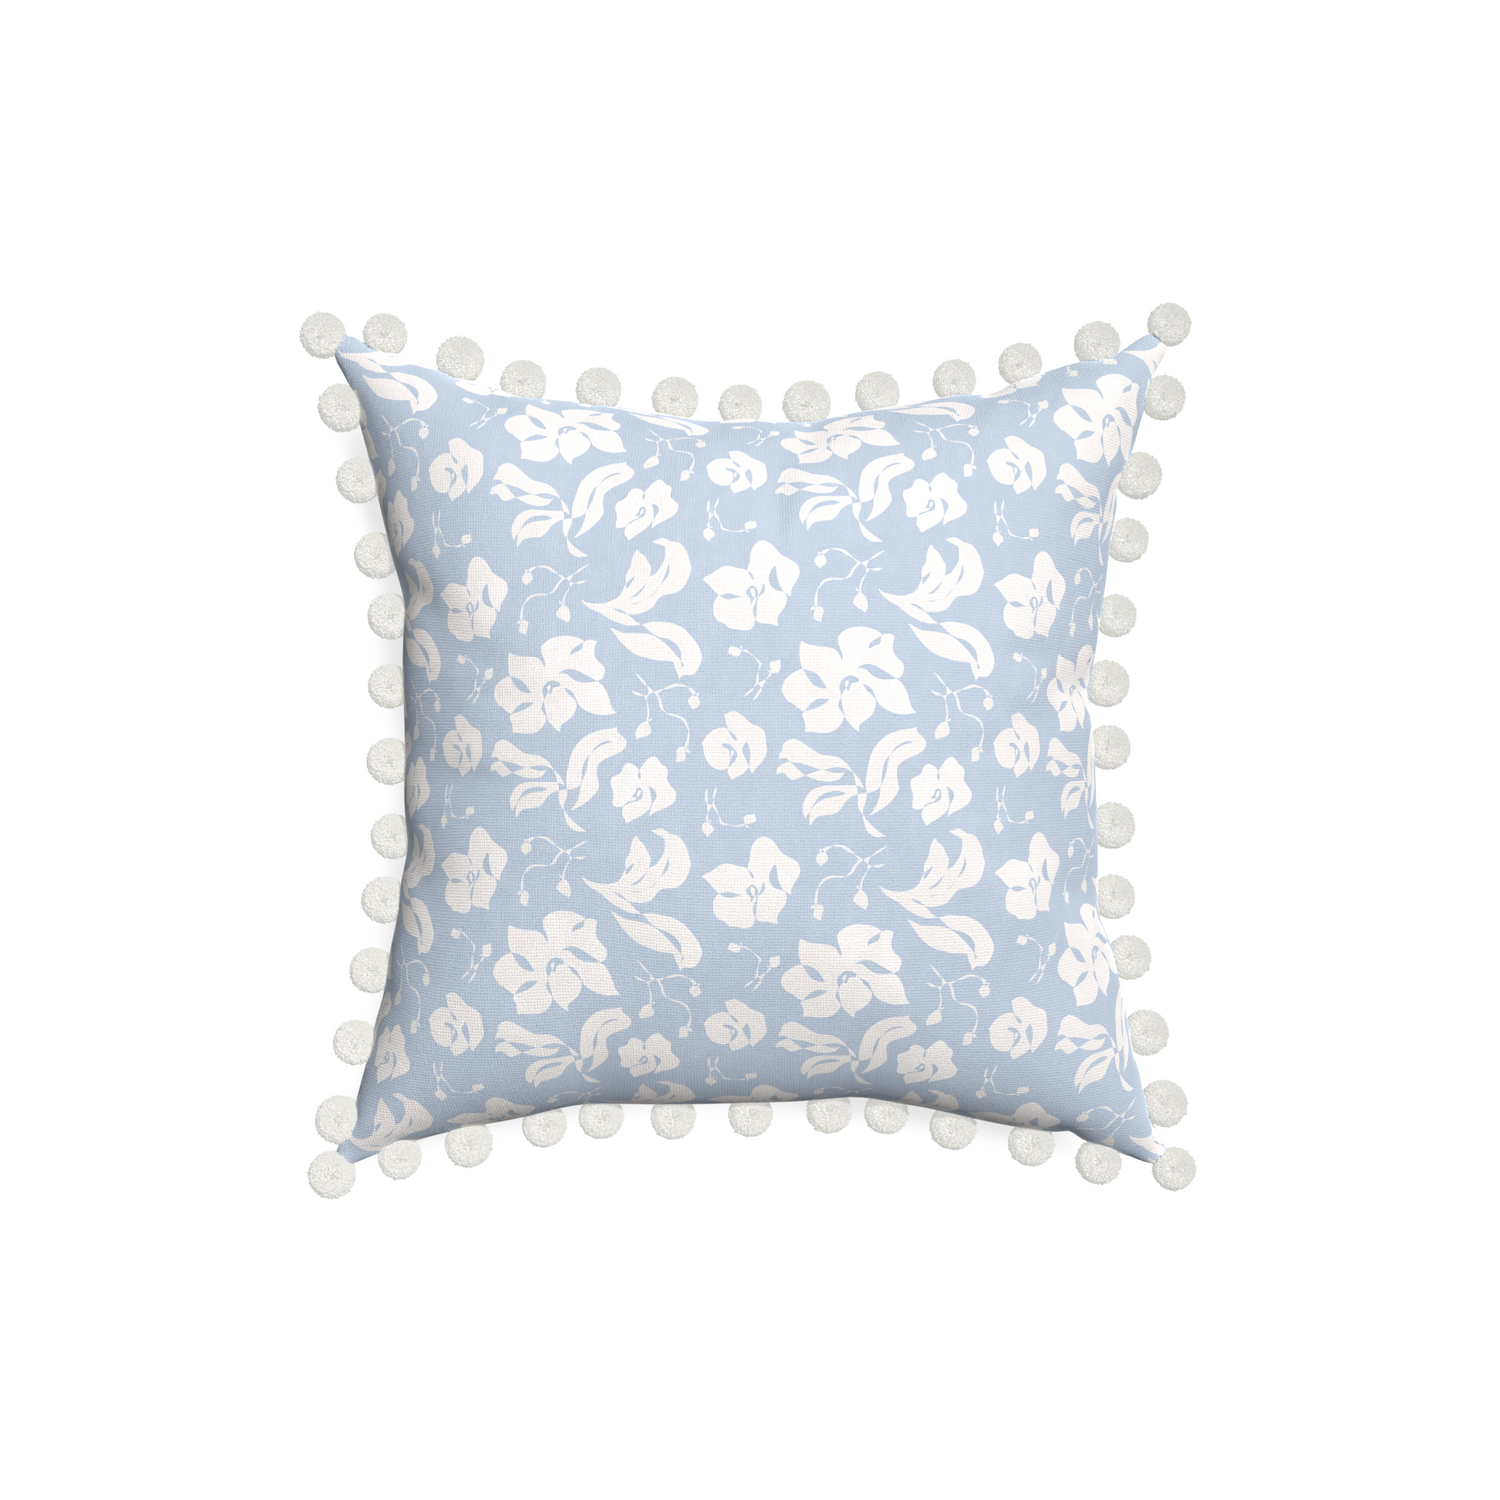 18-square georgia custom pillow with snow pom pom on white background